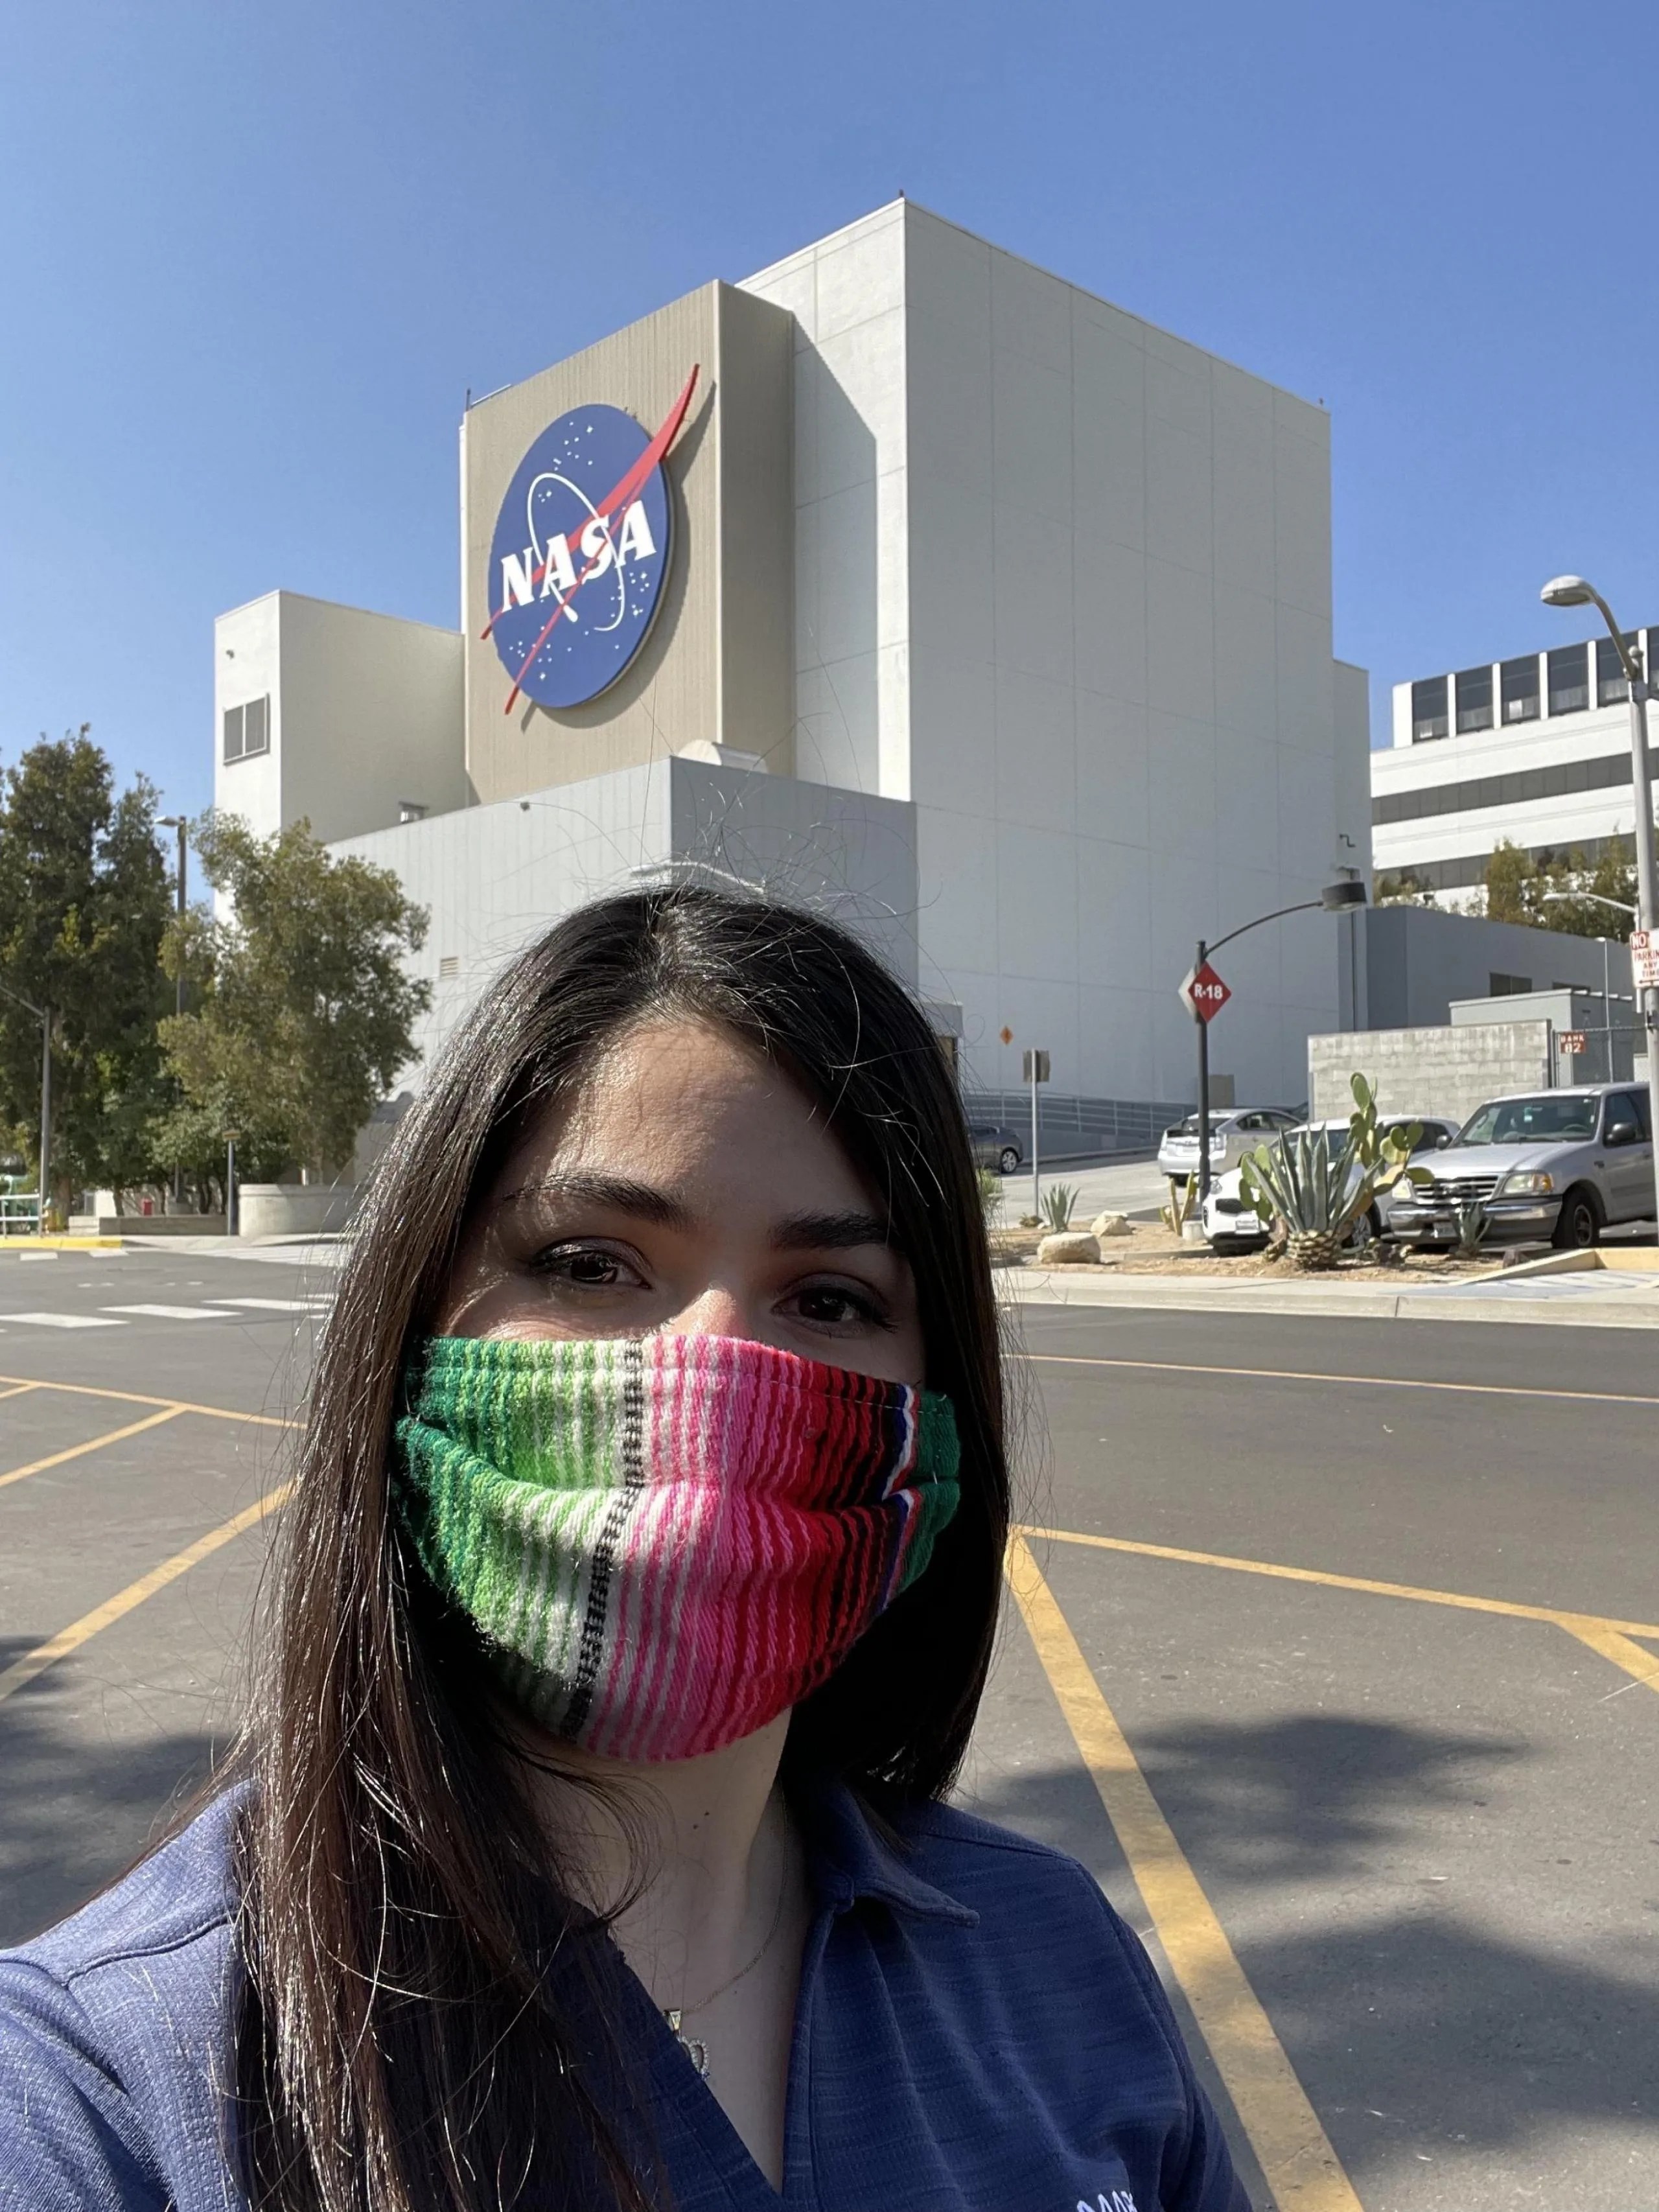 Autorretrato de Sarah Yearicks en las afueras de JPL, en el sur de California.